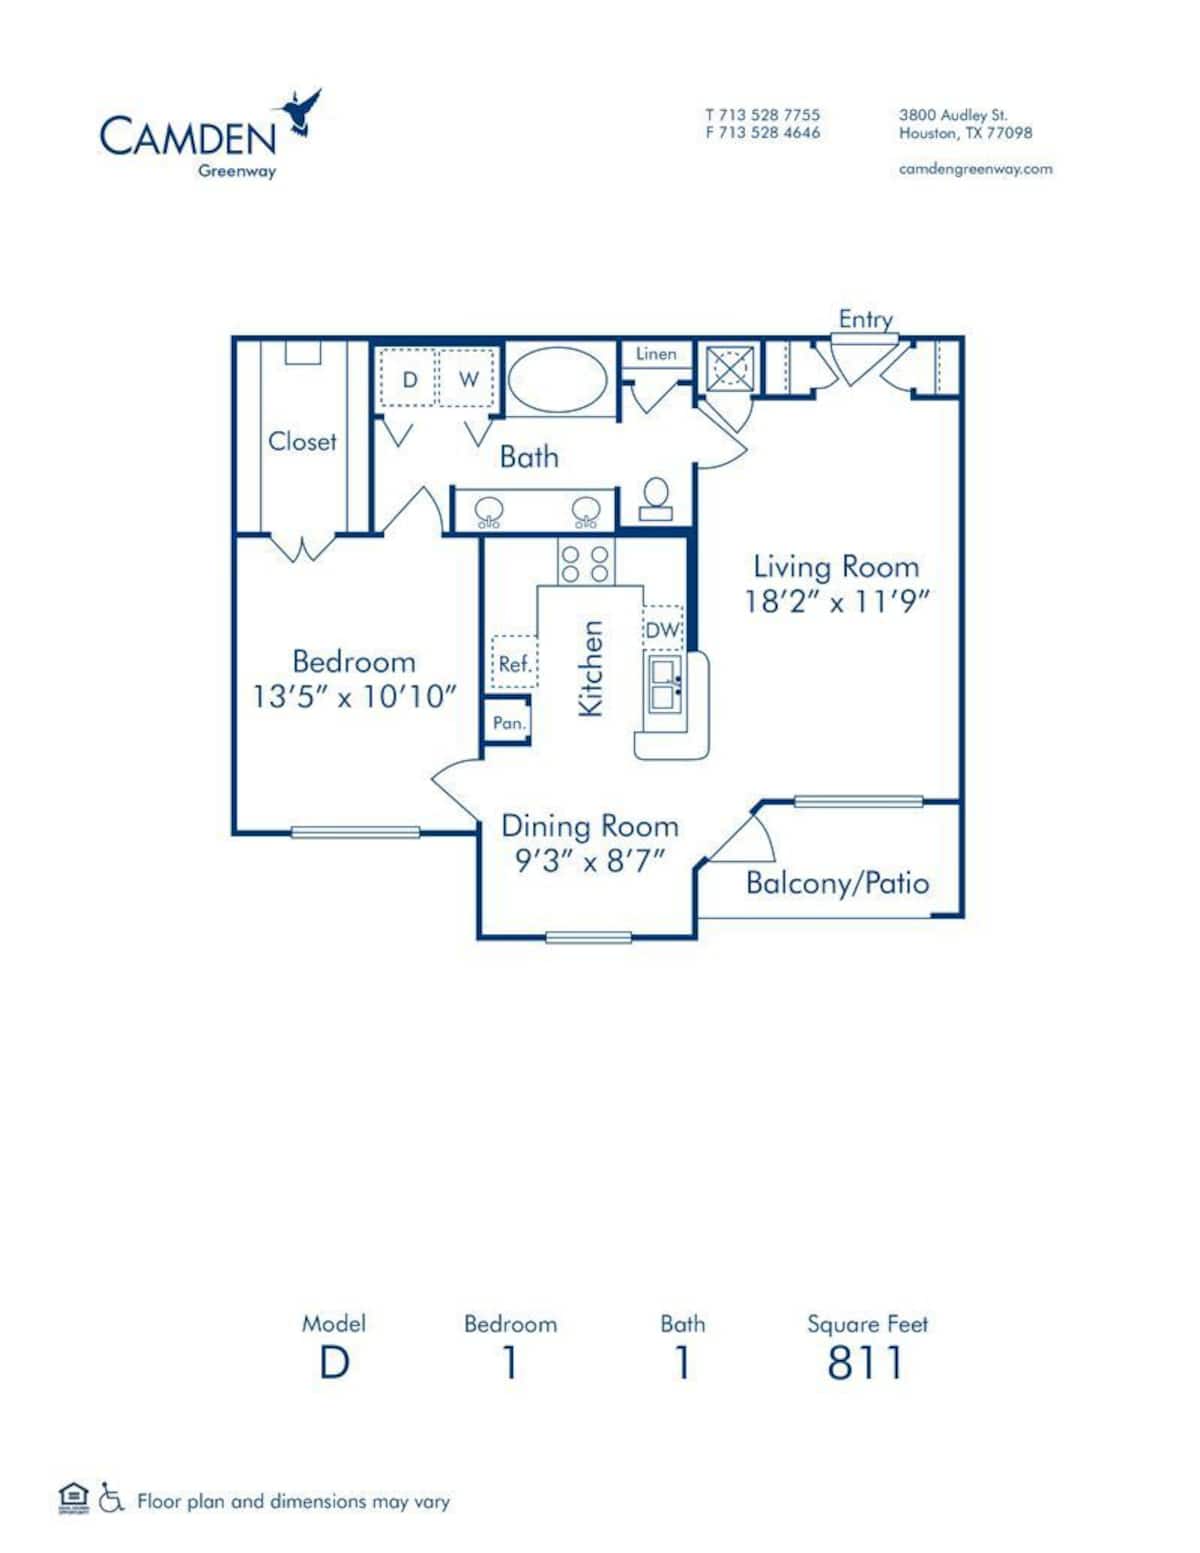 Floorplan diagram for D, showing 1 bedroom